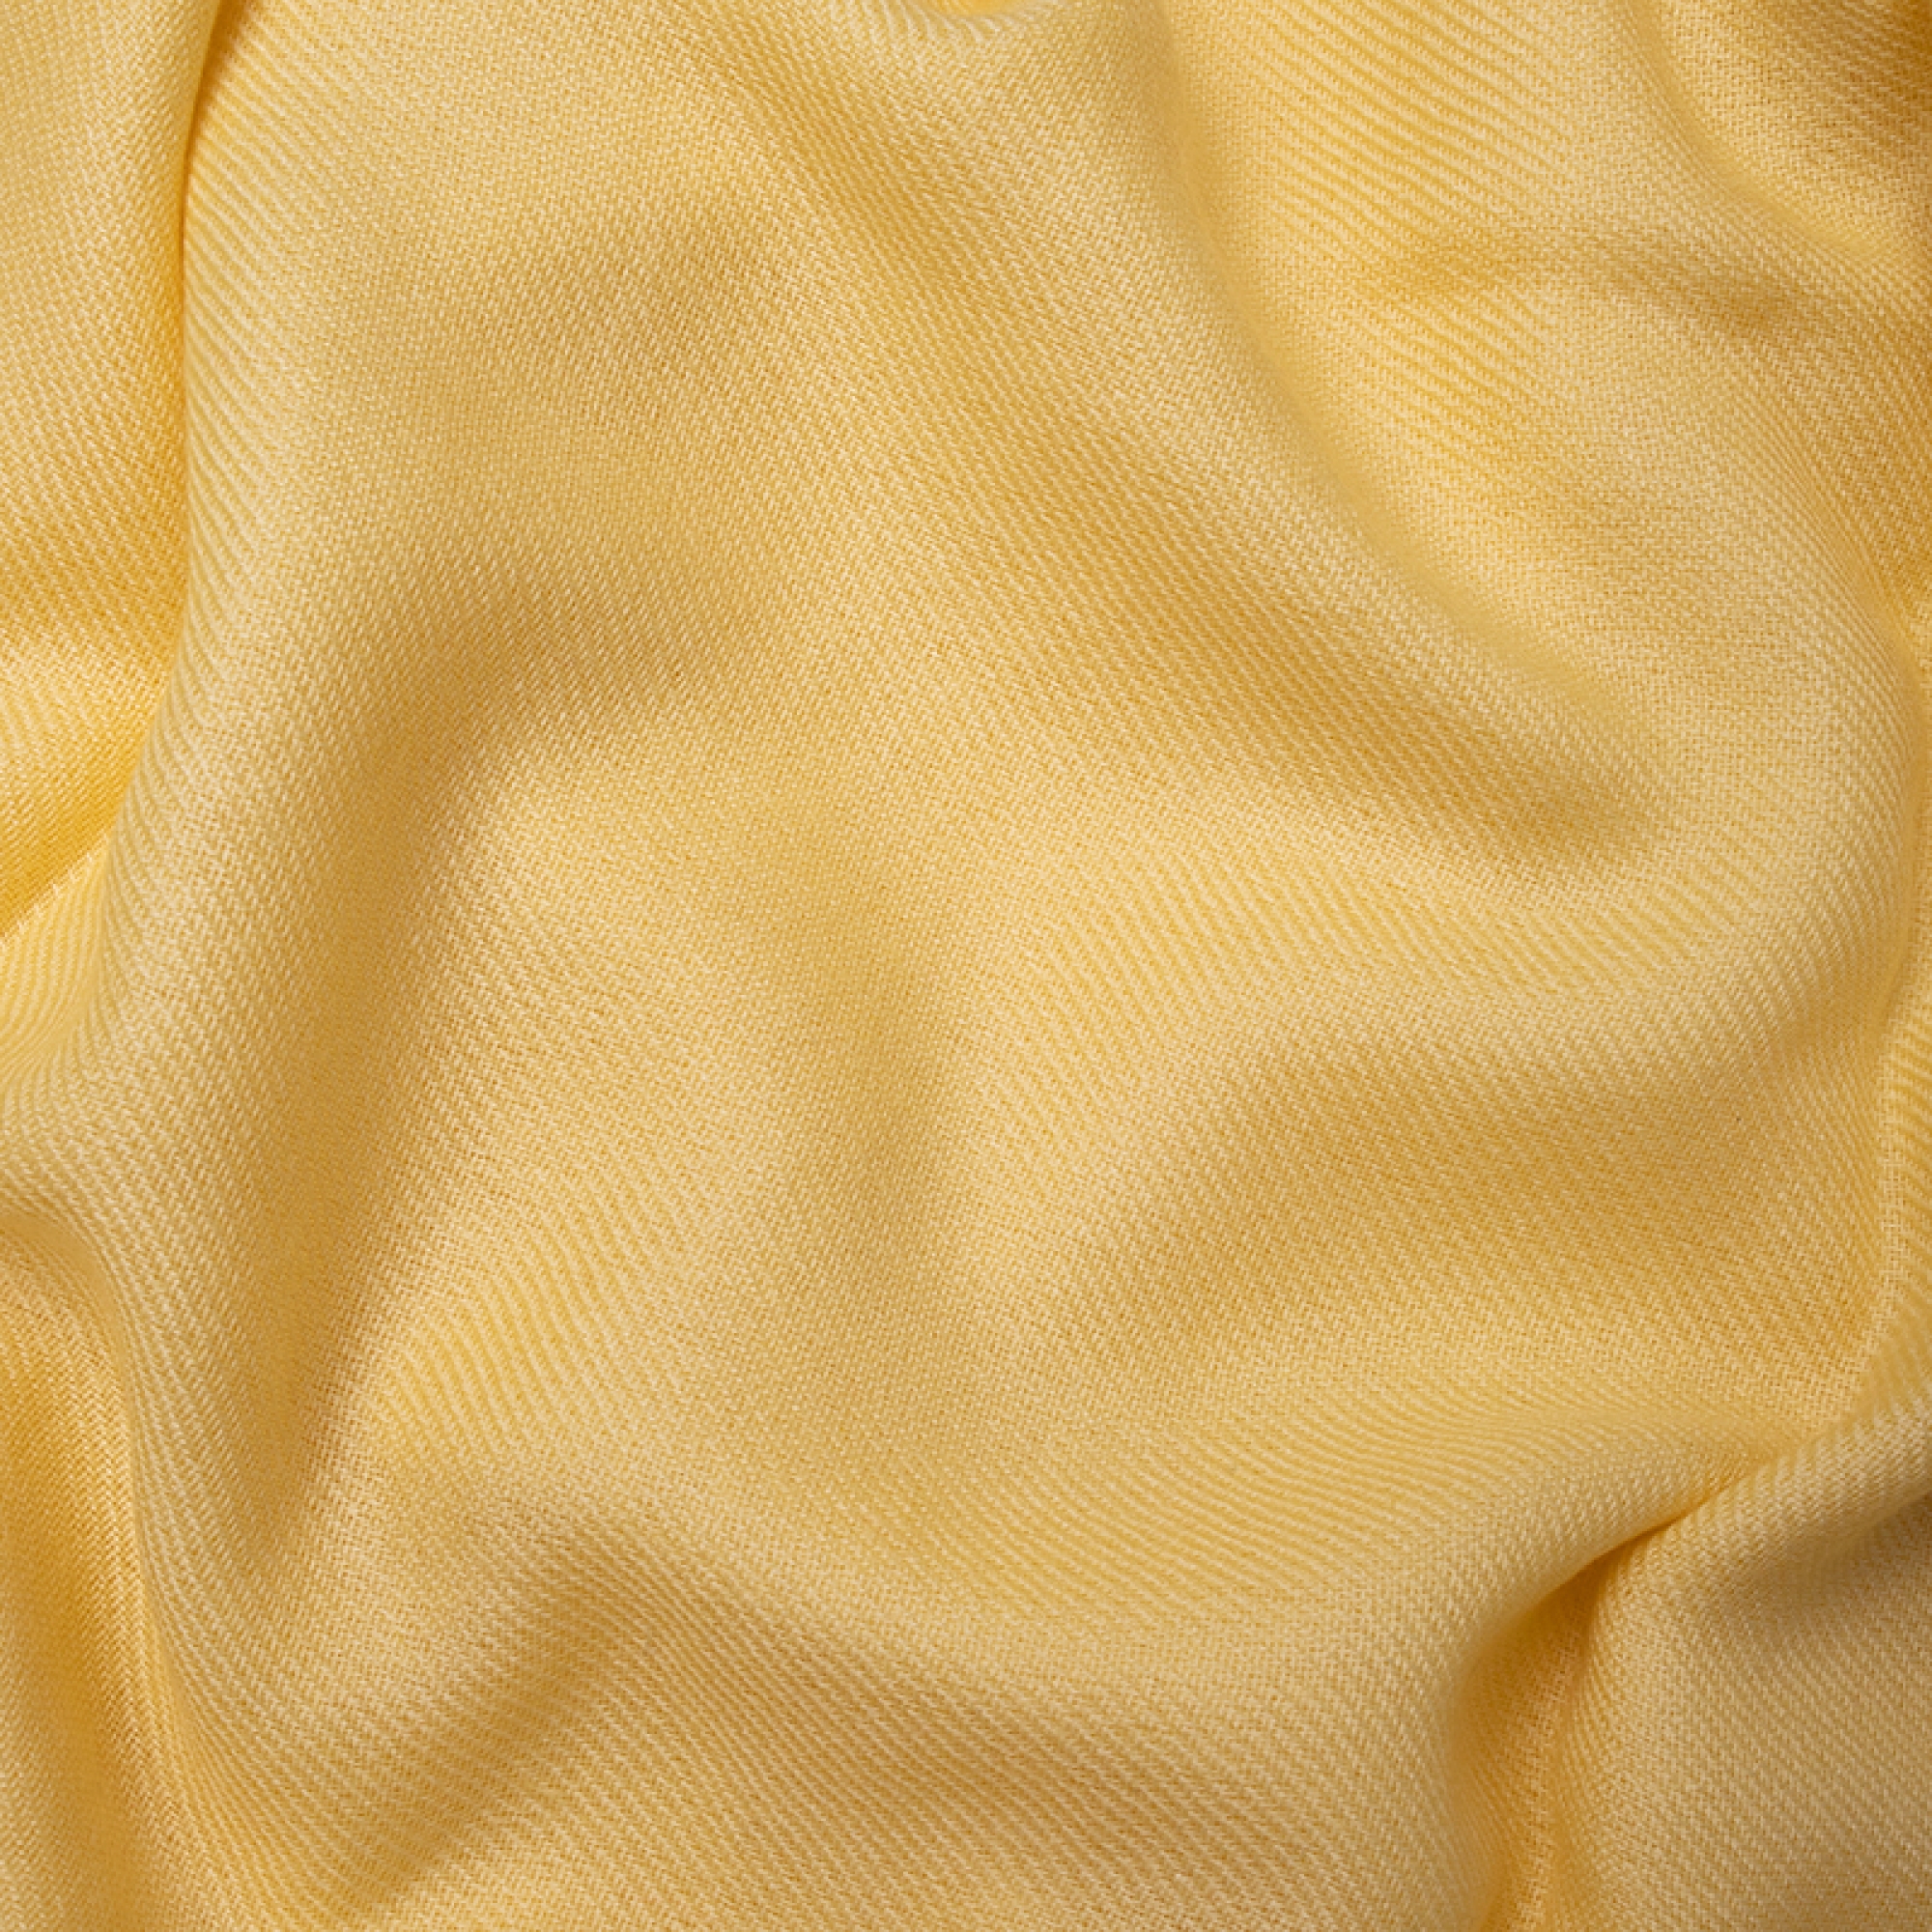 Cachemire interieur femme toodoo plain l 220 x 220 jaune pastel 220x220cm